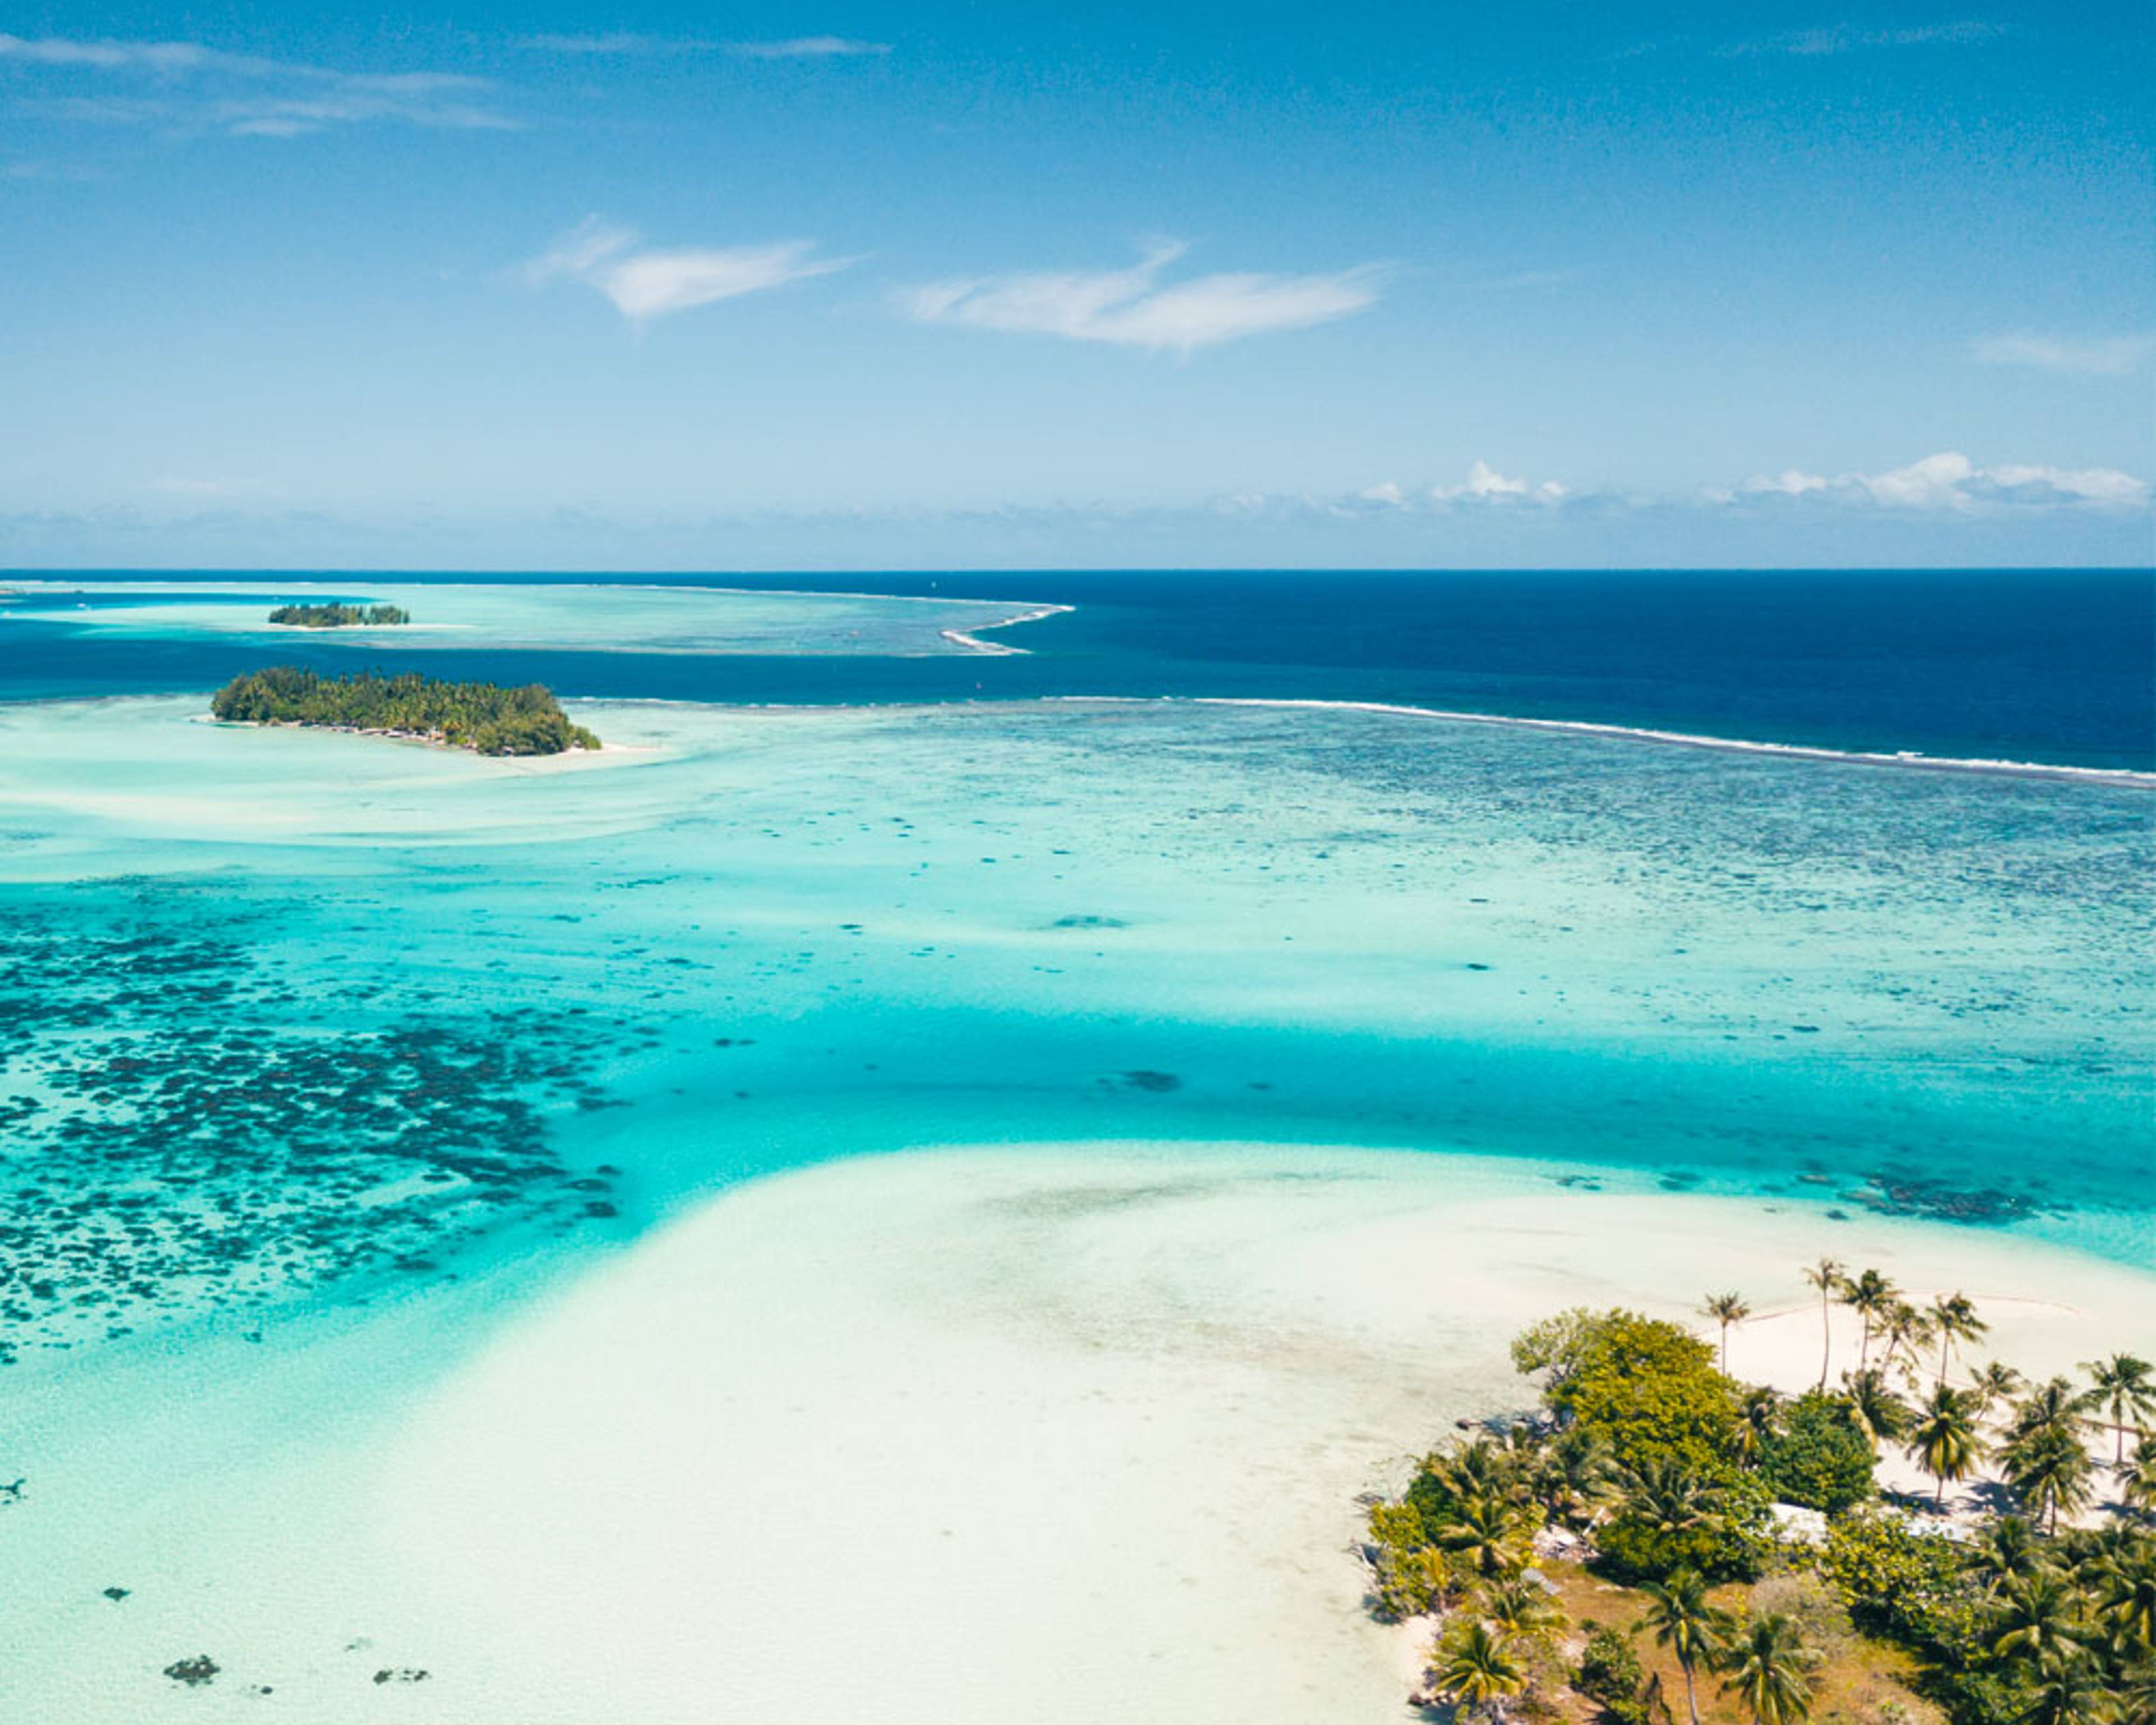 Découvrez les plus belles plages lors de votre voyage en Polynésie française 100% sur mesure